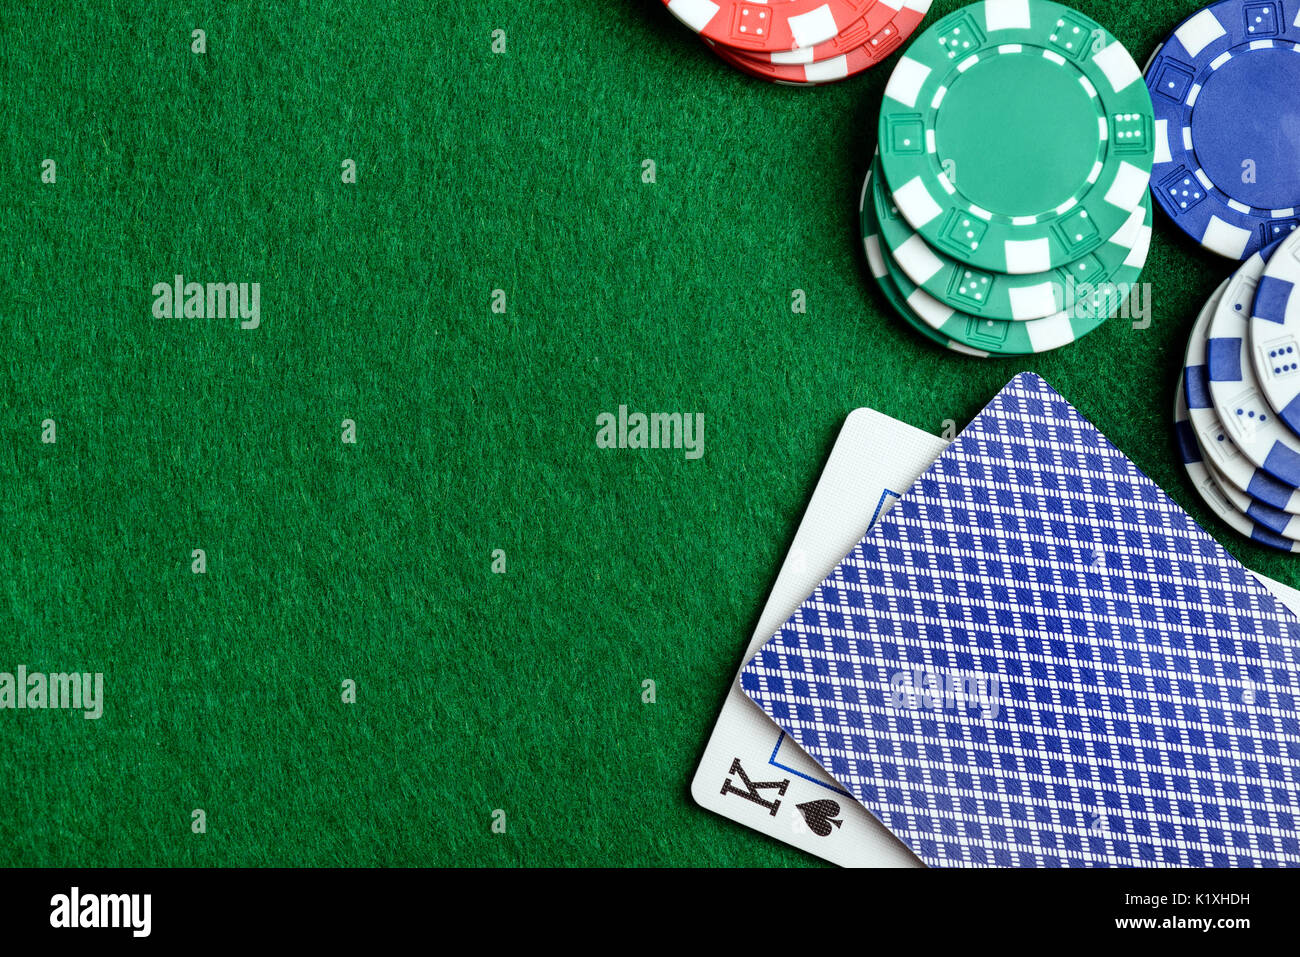 Puede agradecernos más tarde: 3 razones para dejar de pensar en casinos seguros